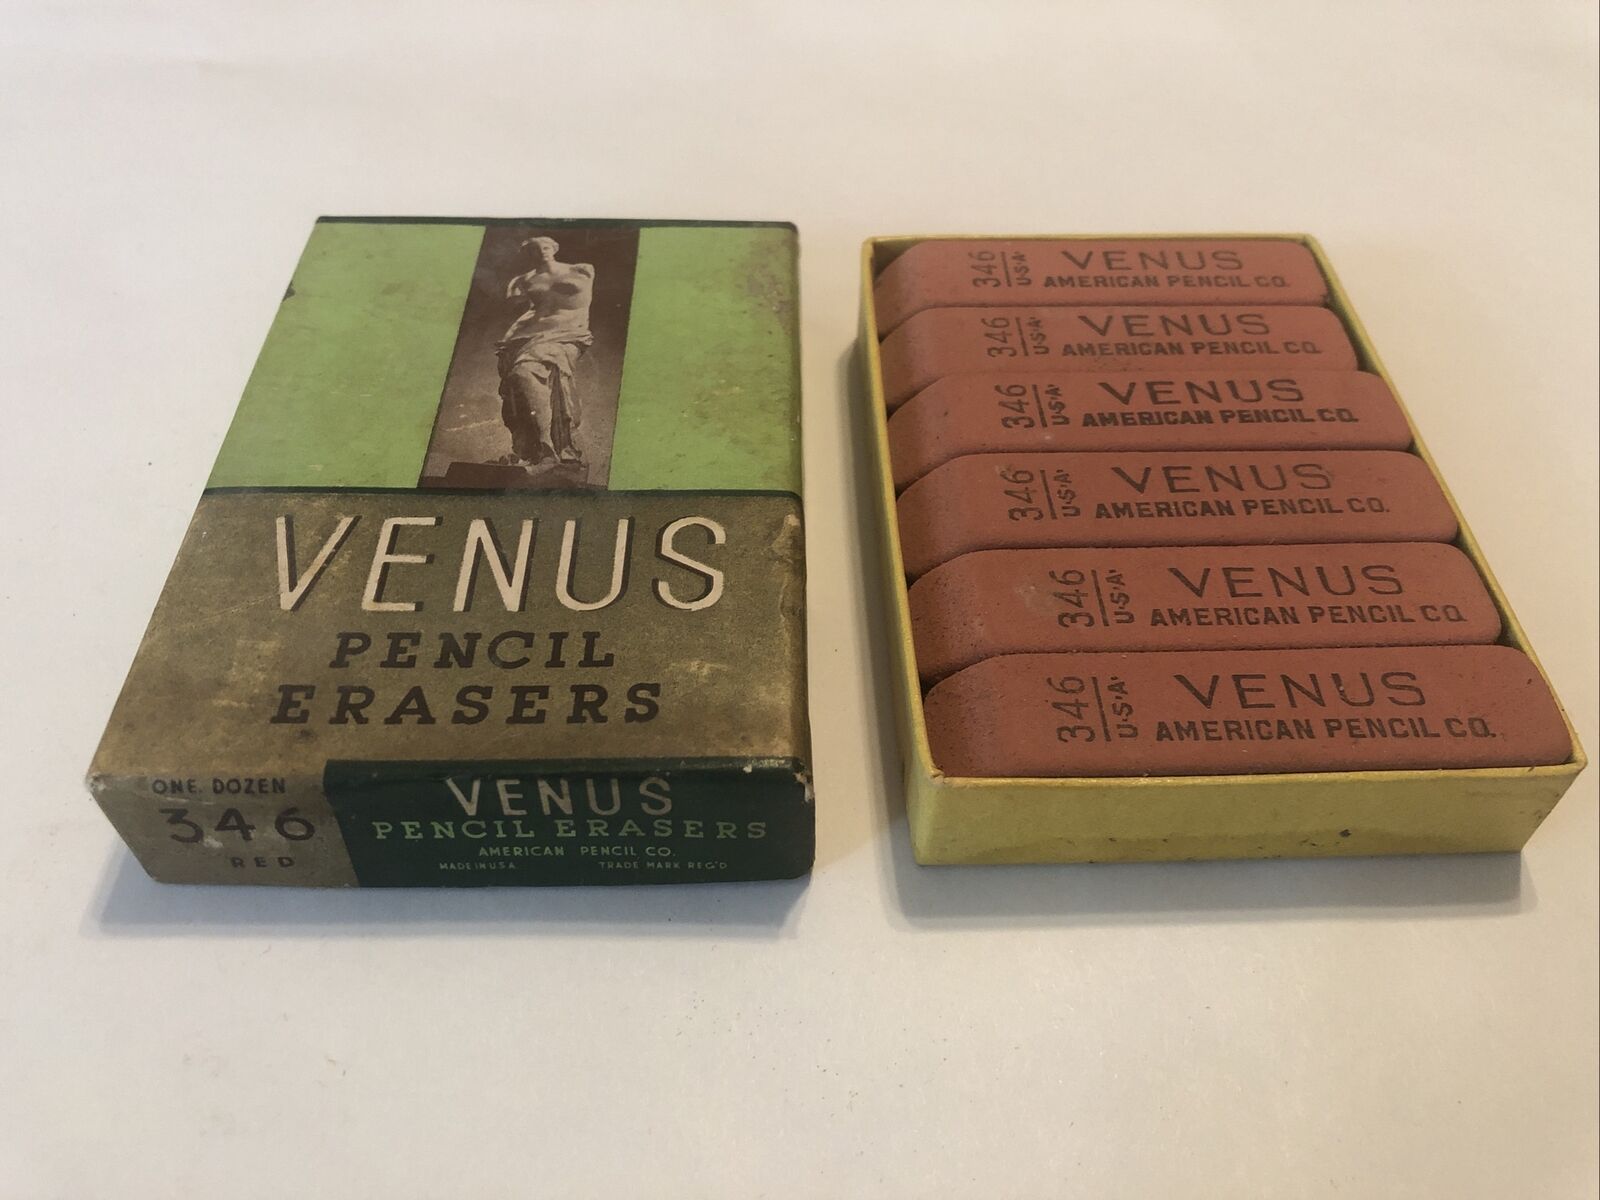 Vintage VENUS Pencil Erasers with box One Dozen 346 American Pencil Co. Rare NOS